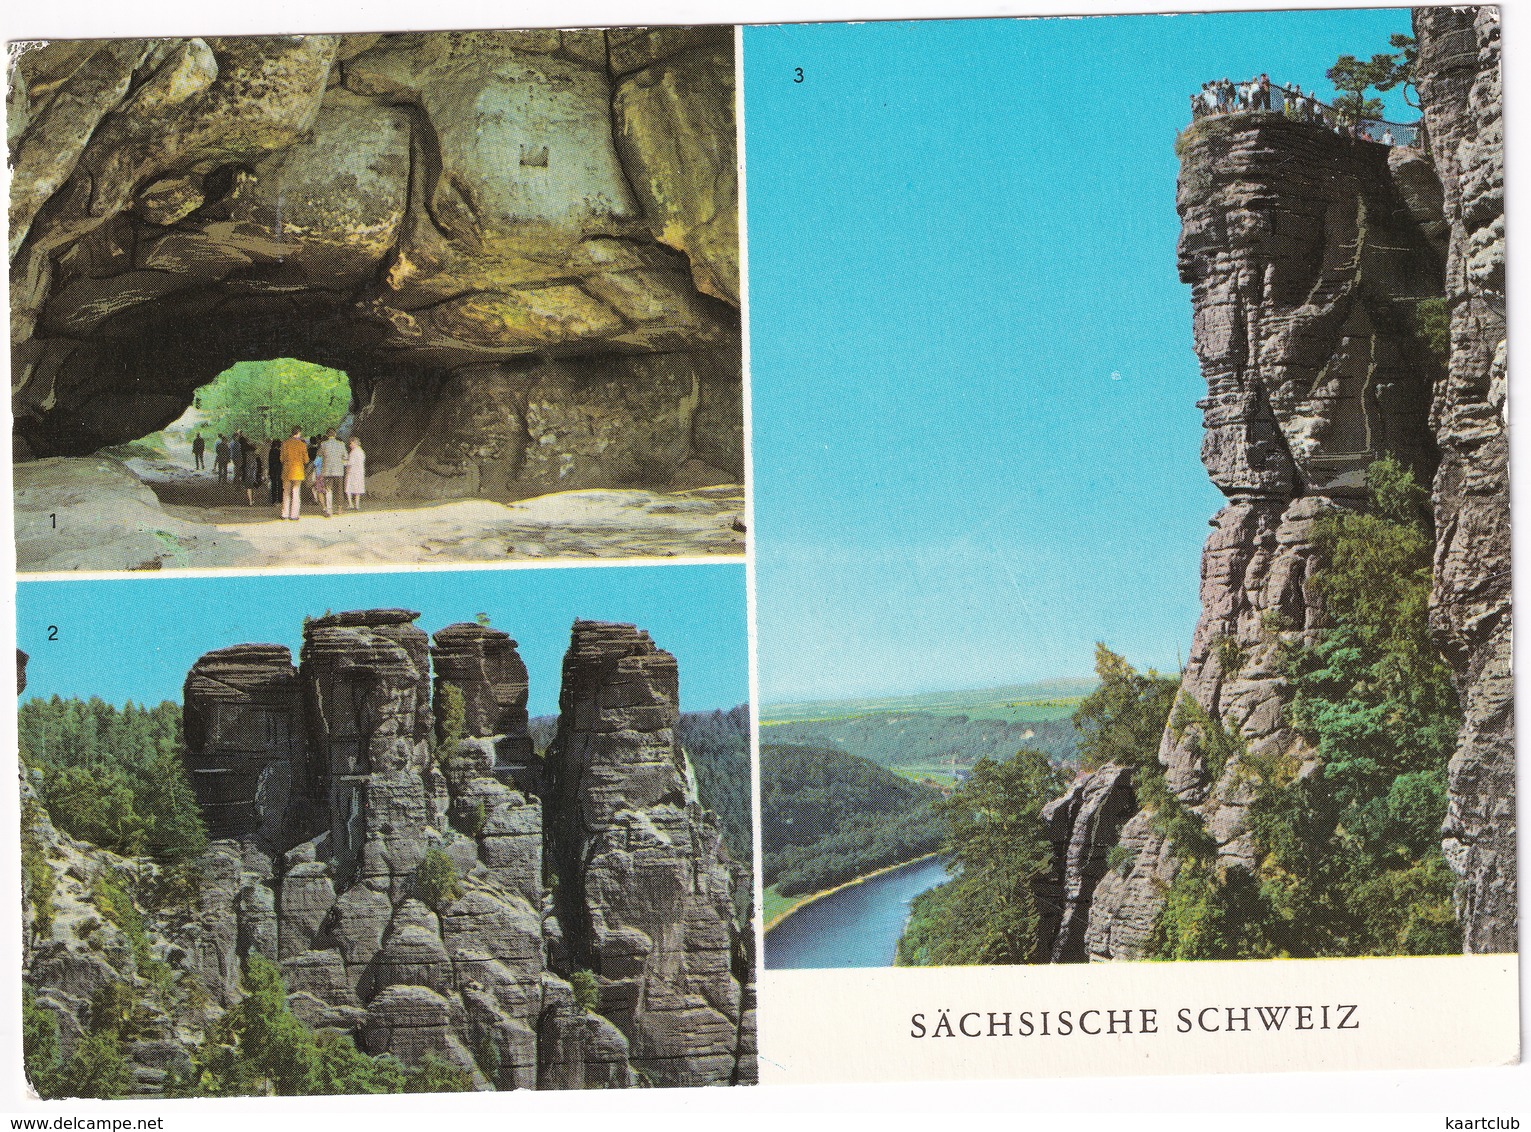 Sächsische Schweiz - Kuhstall, Kleine Gans, Basteiaussicht - (DDR) - Bad Schandau